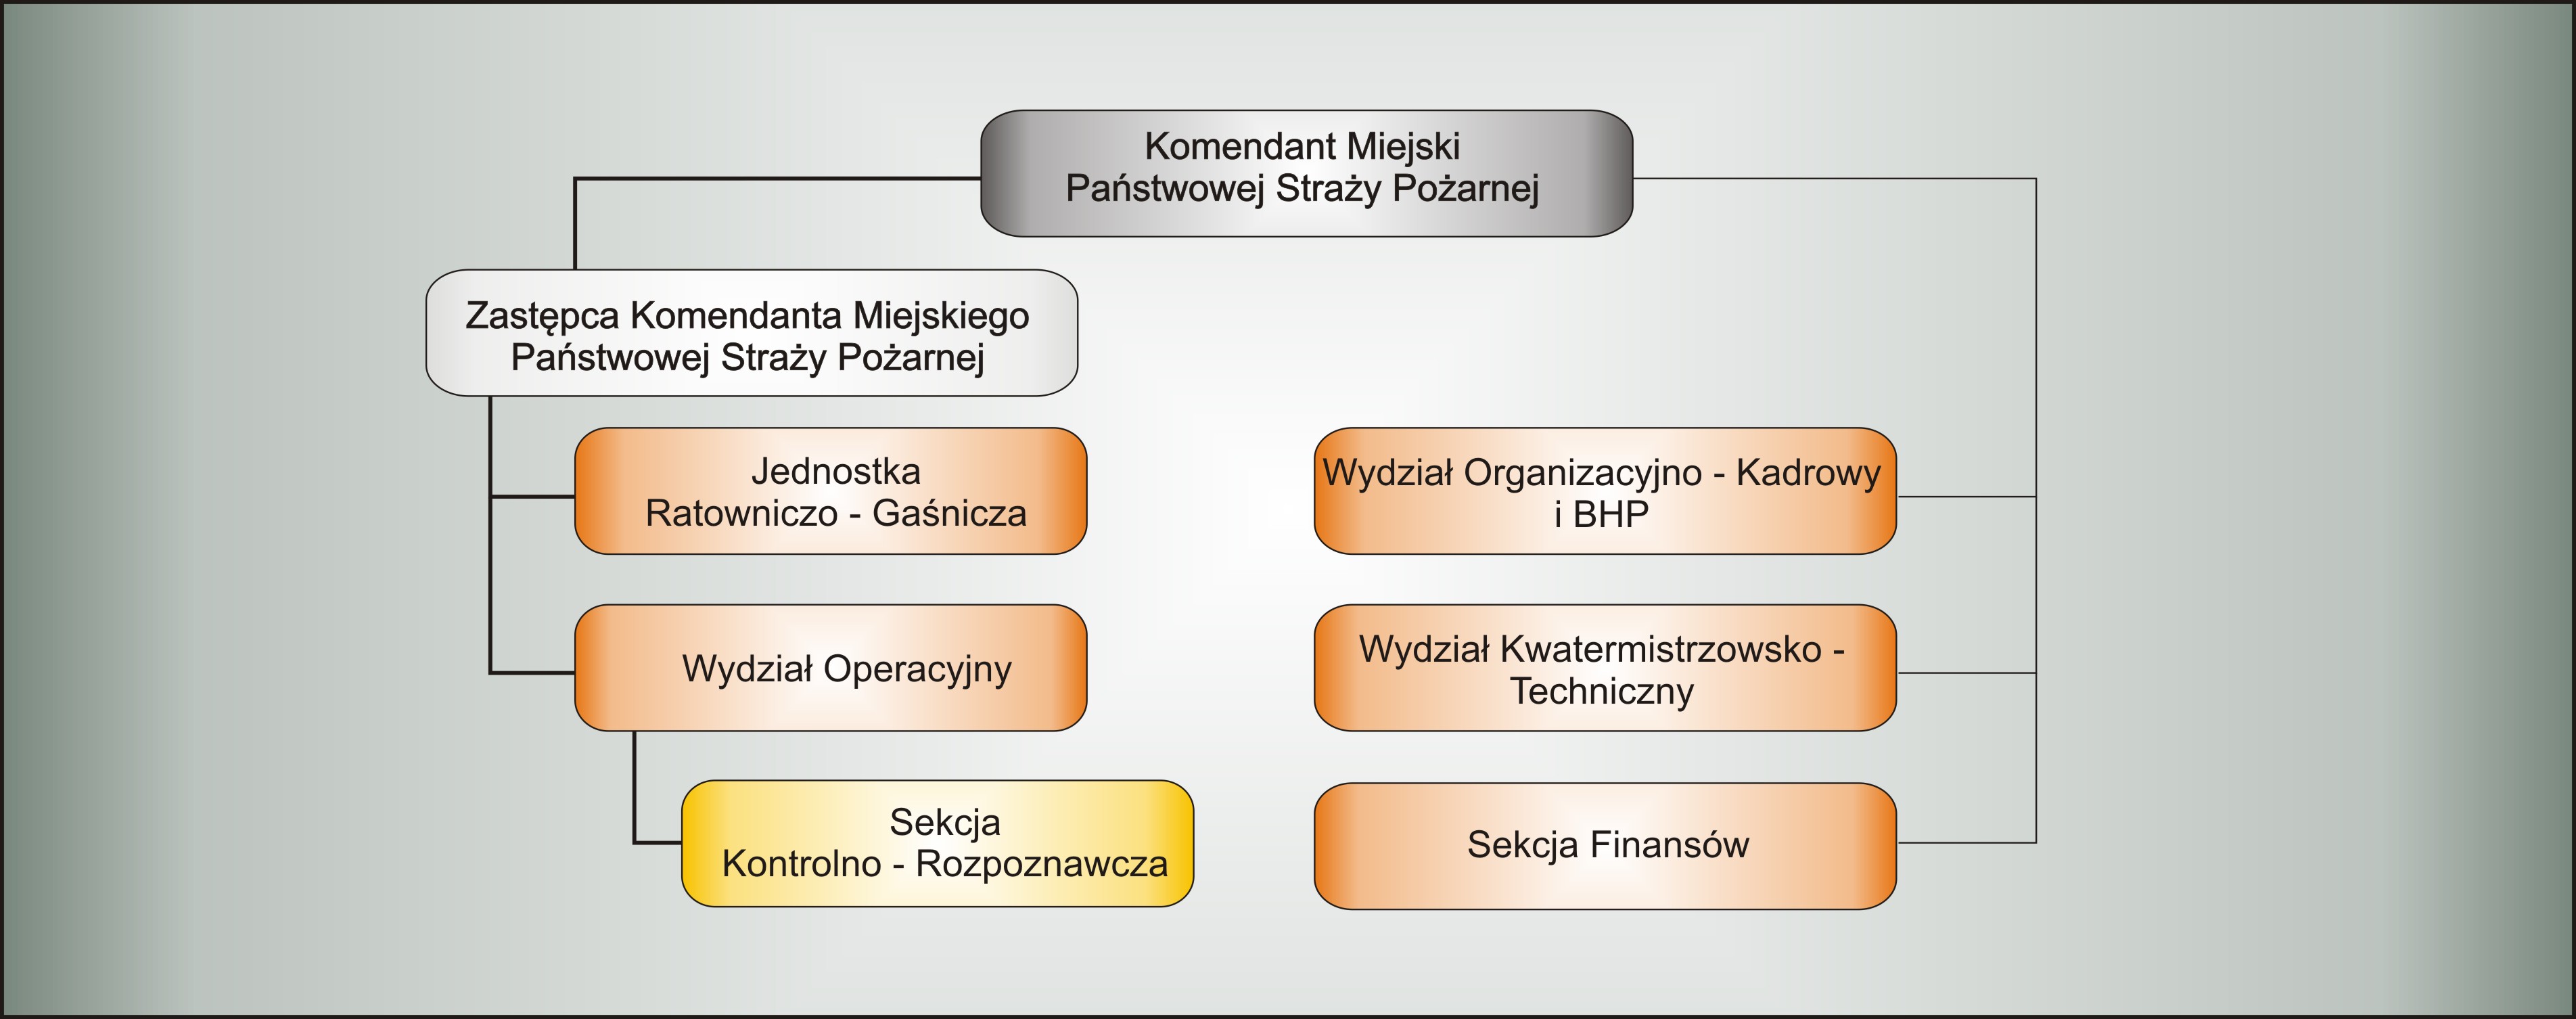 Schemat struktury organizacyjnej Komendy Miejskiej Państwowej Sraży Pożarnej w Krośnie